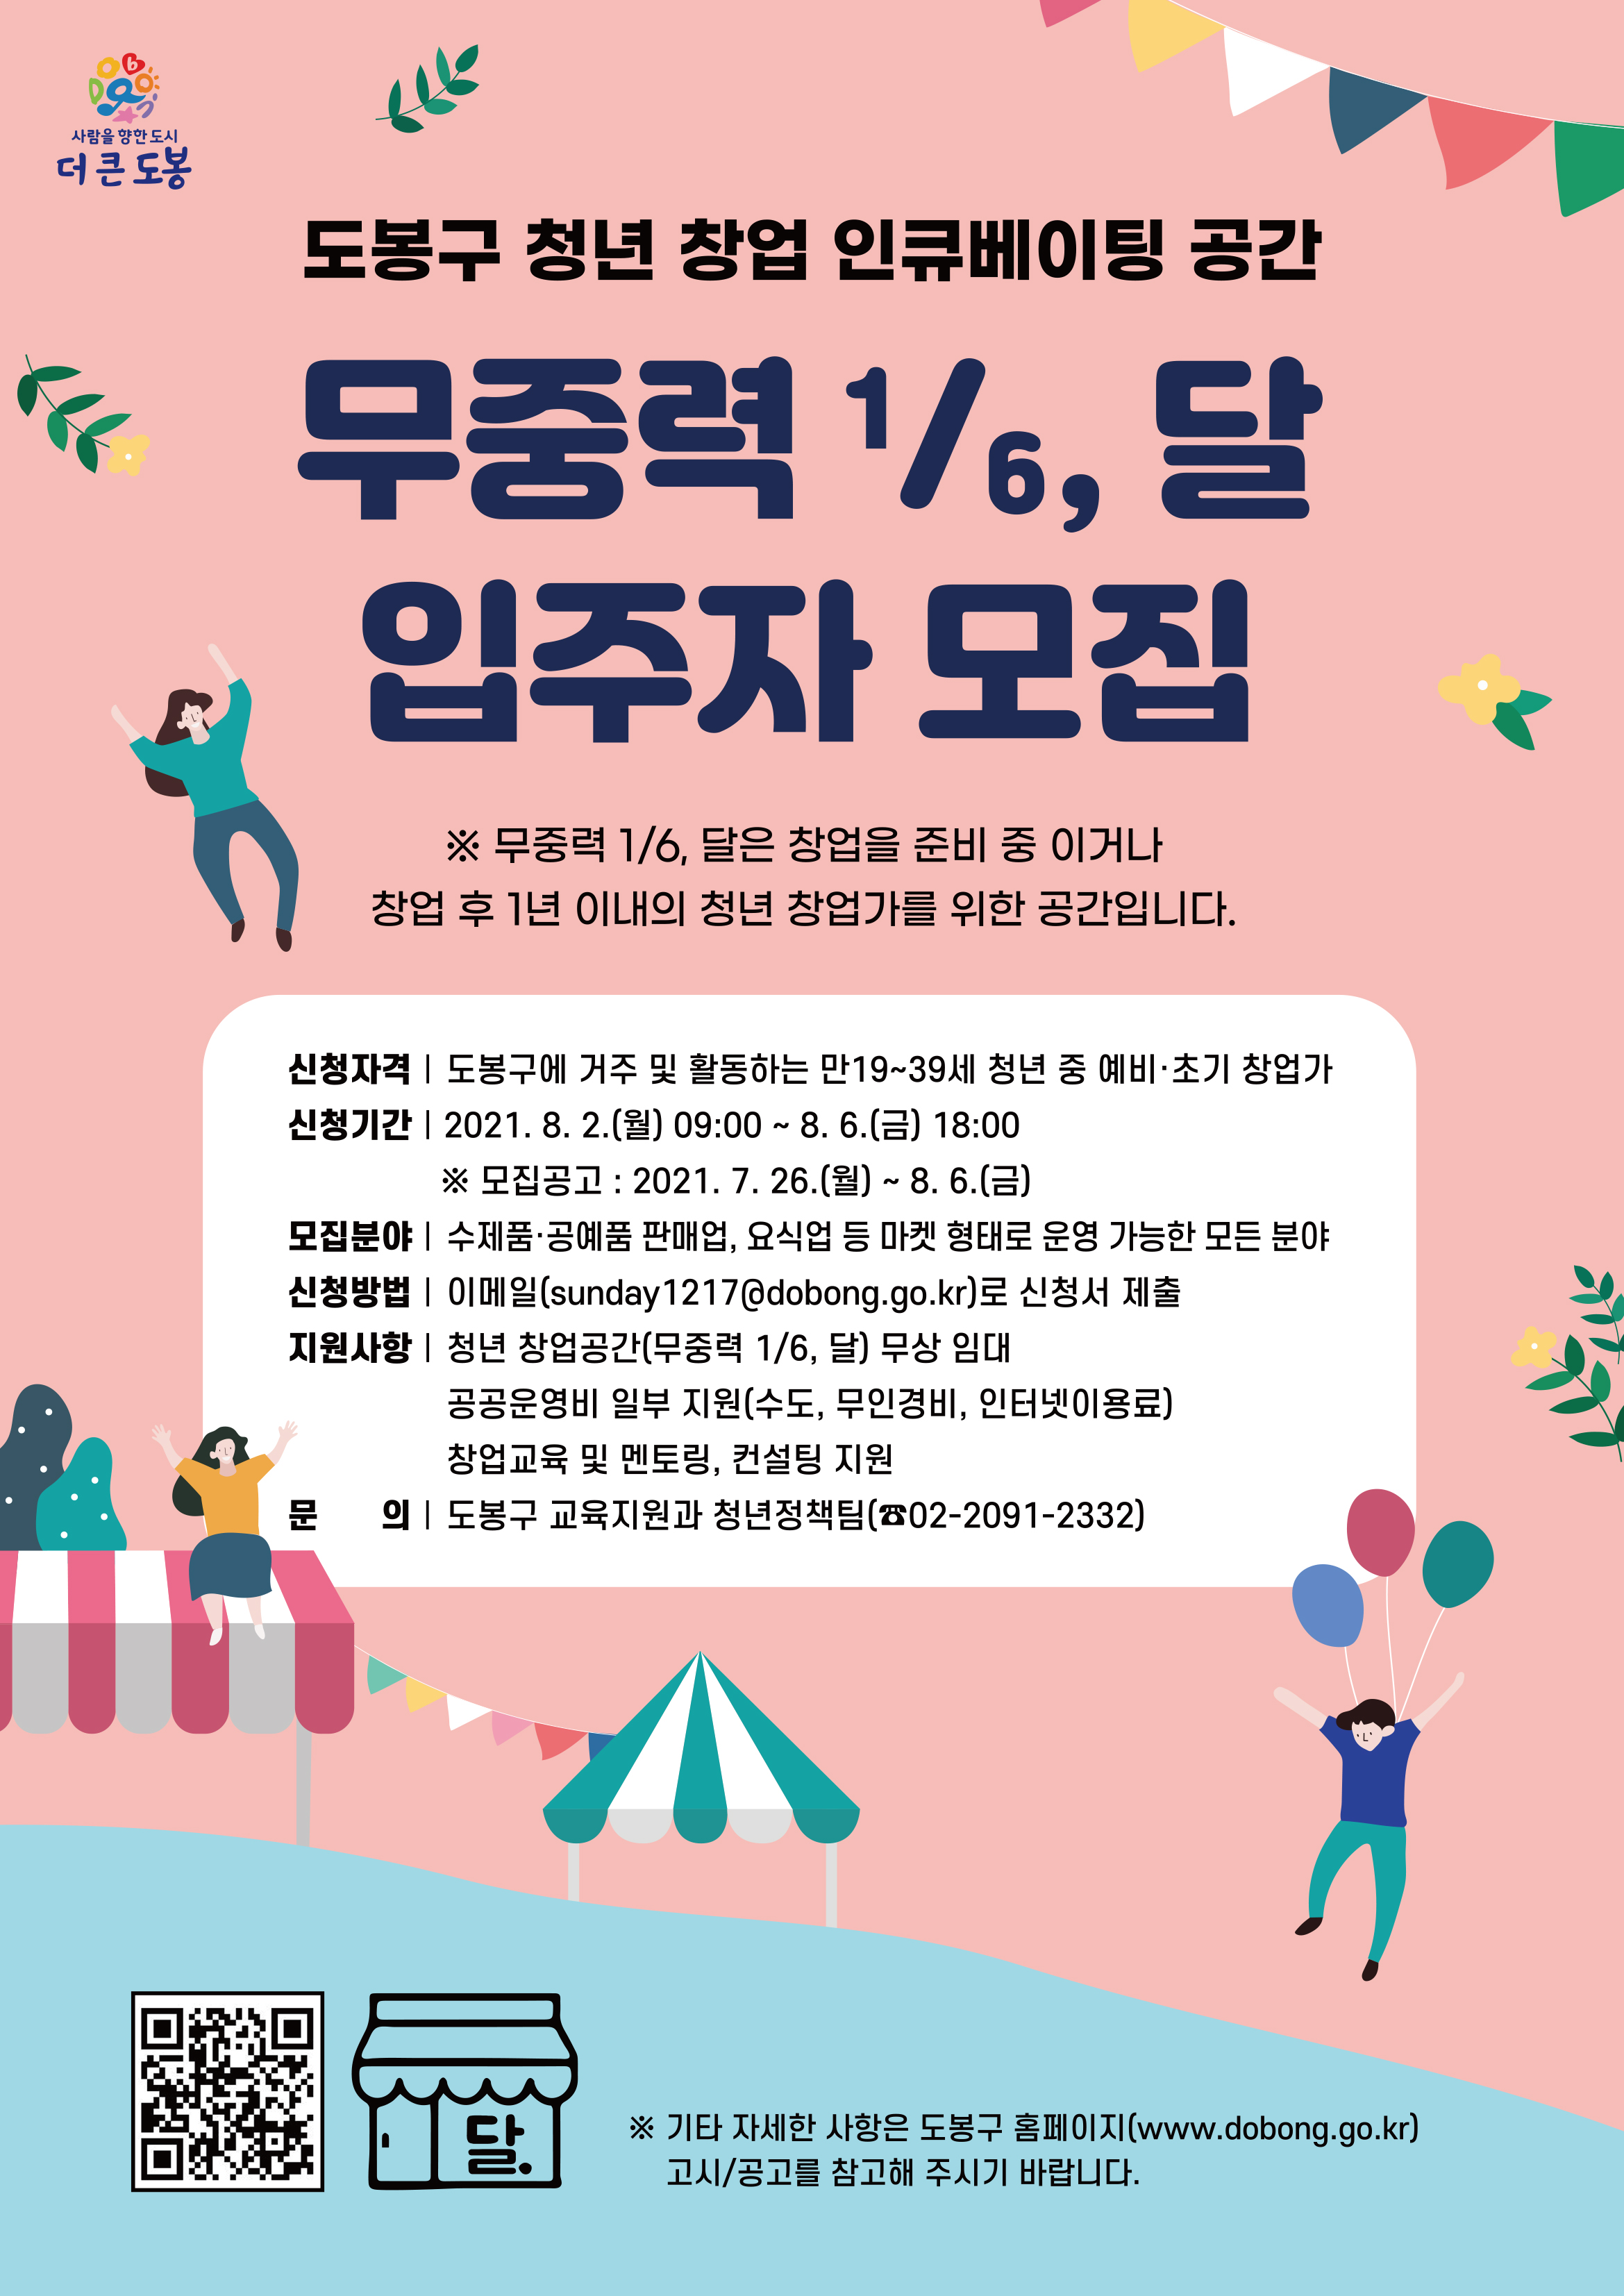 청년 창업 인큐베이팅 공간 ＇무중력 1/6,달＇ 입주자 모집